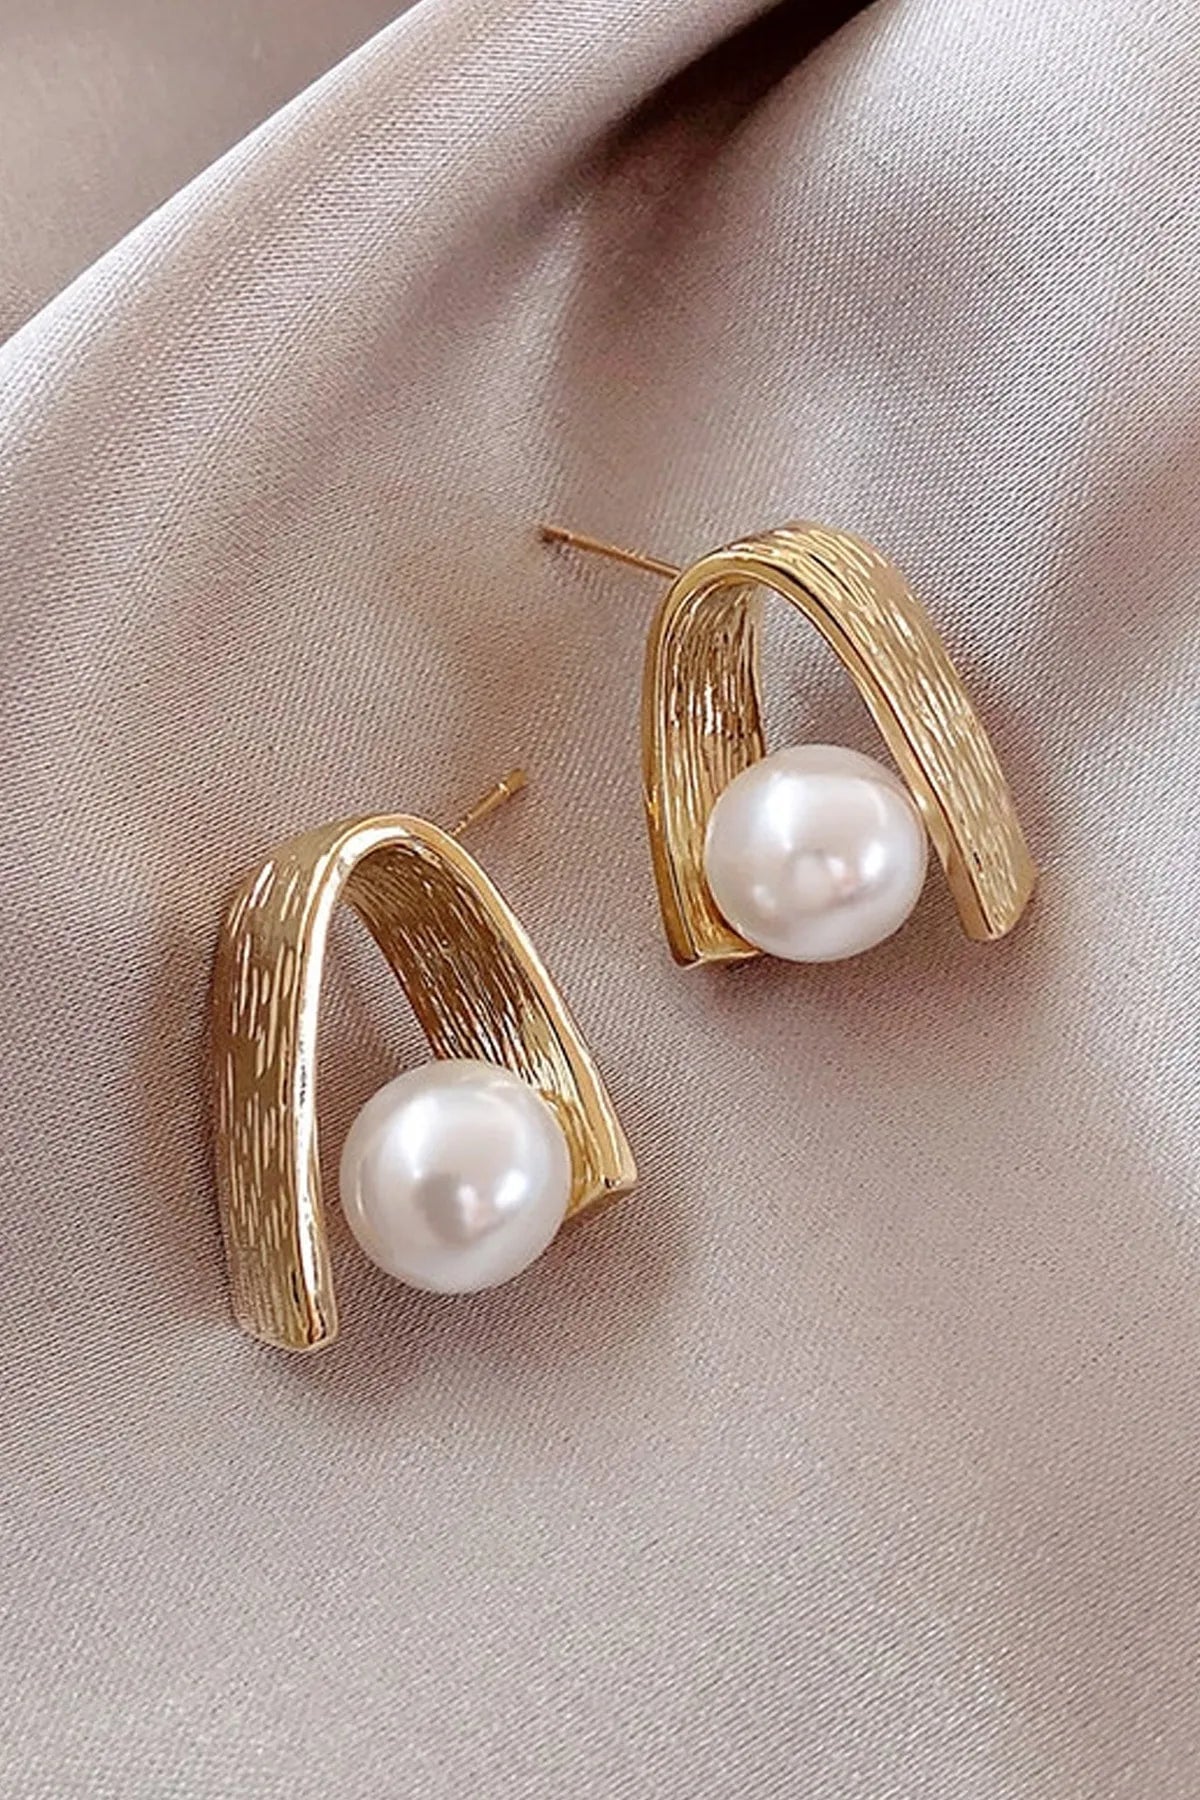 Elegant Pearl Design Gold Earrings for Women - Convertible Link Hoop Earrings